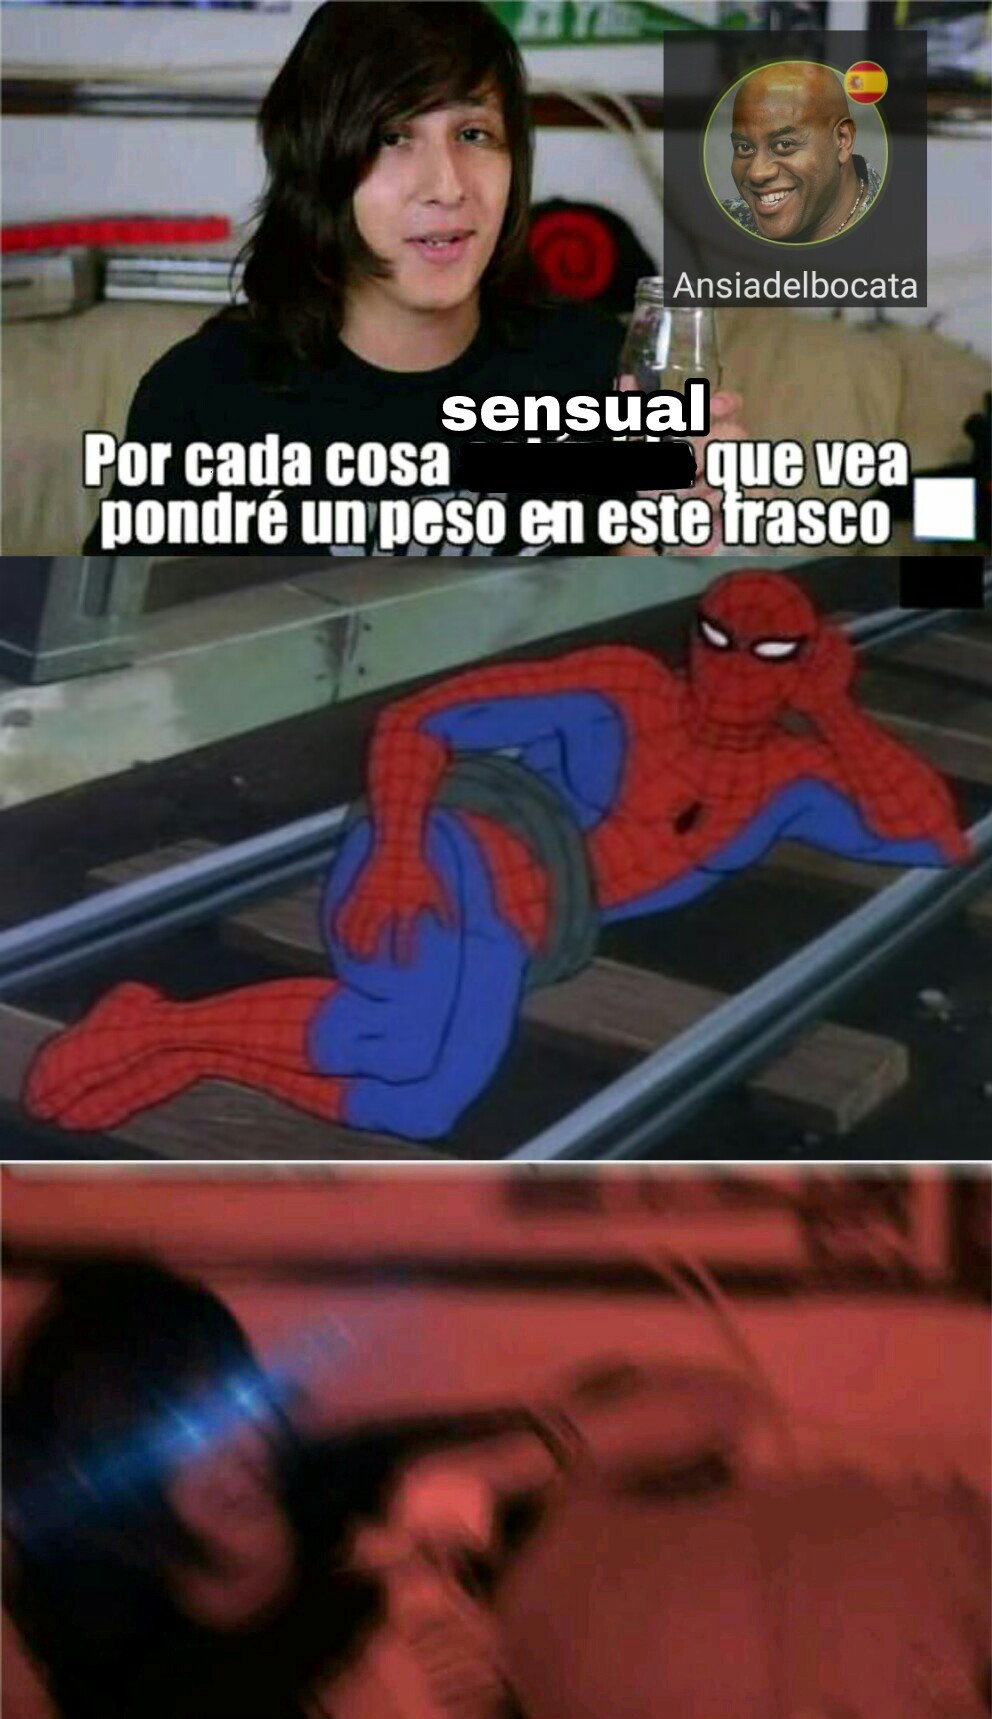 Estupido y sensual spiderman - meme